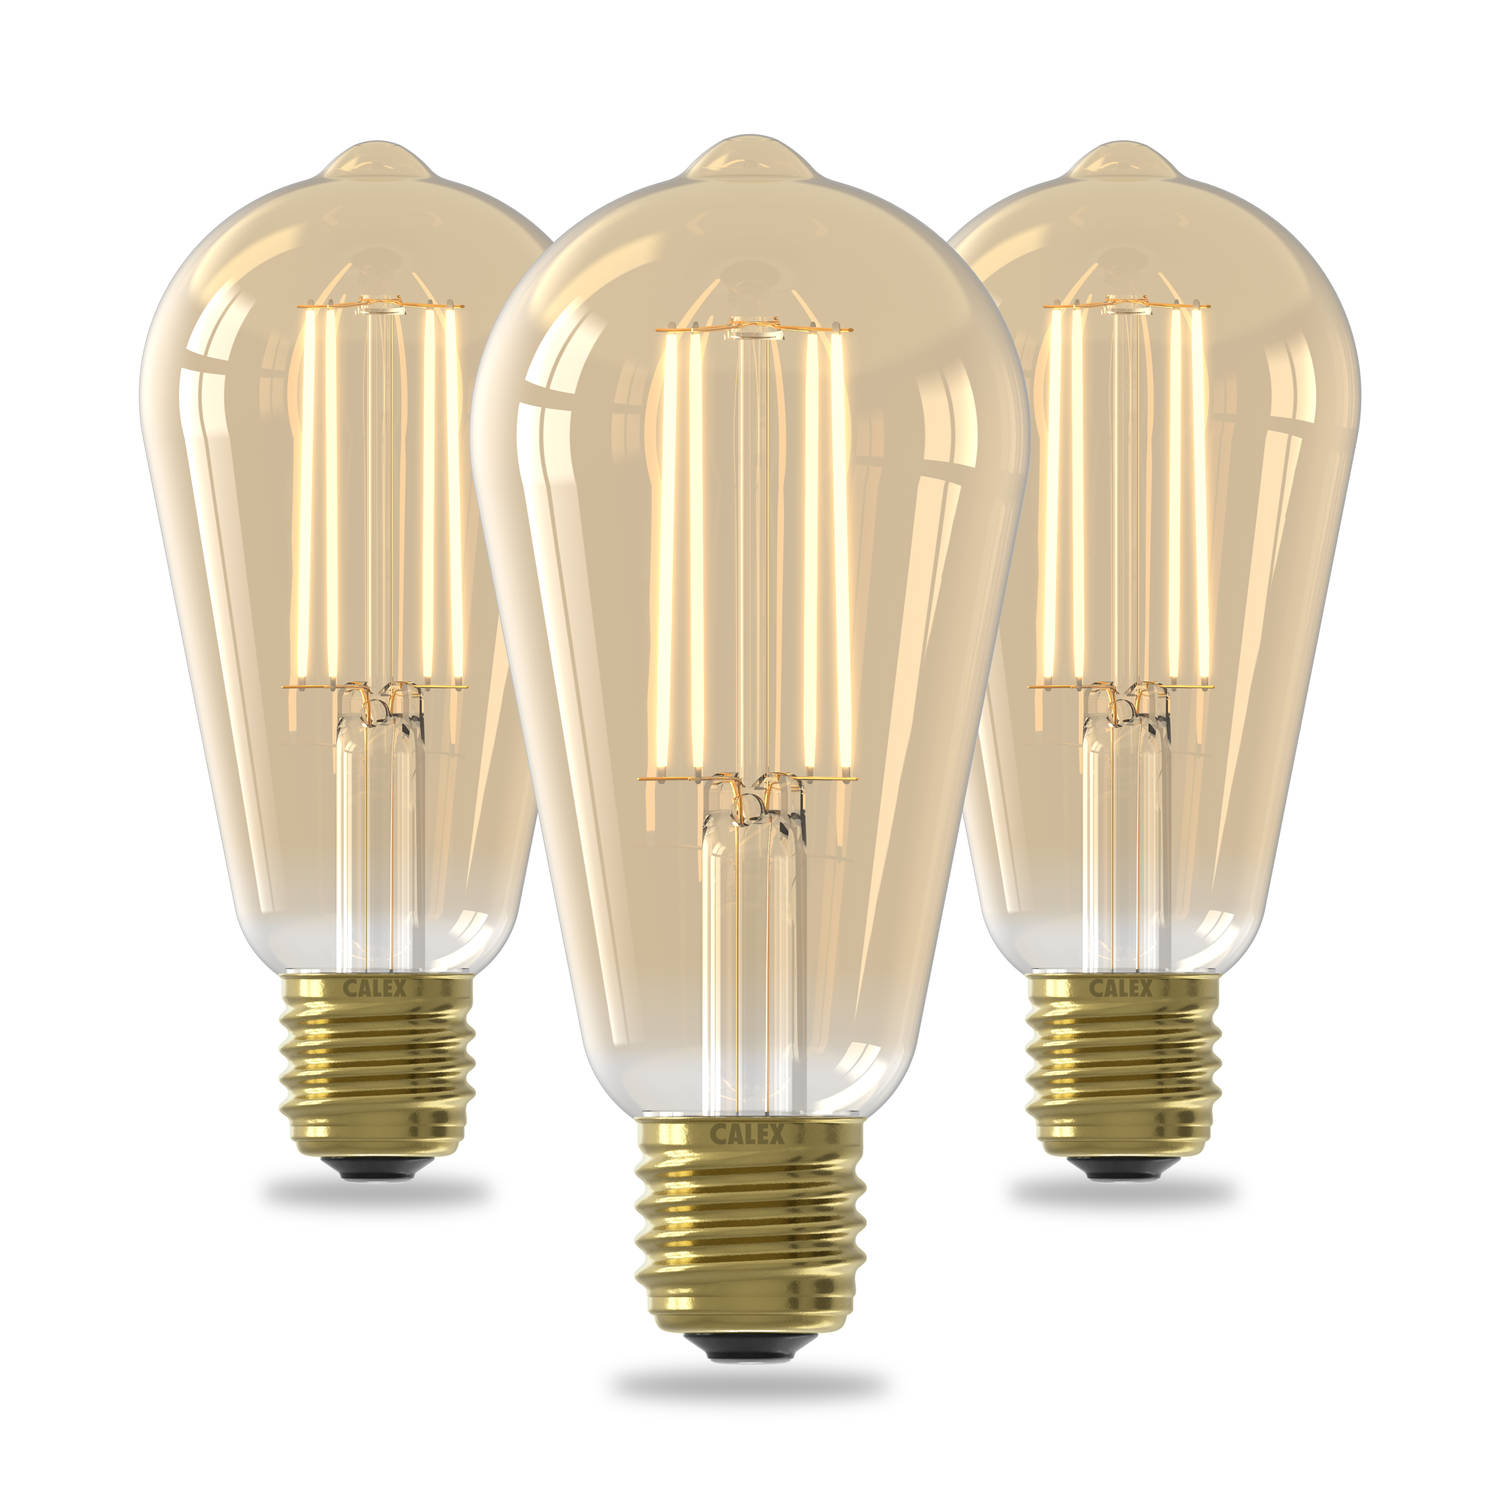 Calex Filament LED Lamp - Set van 3 stuks - Rustiek Vintage Lichtbron - E27 - Goud - Warm Wit Licht - Dimbaar